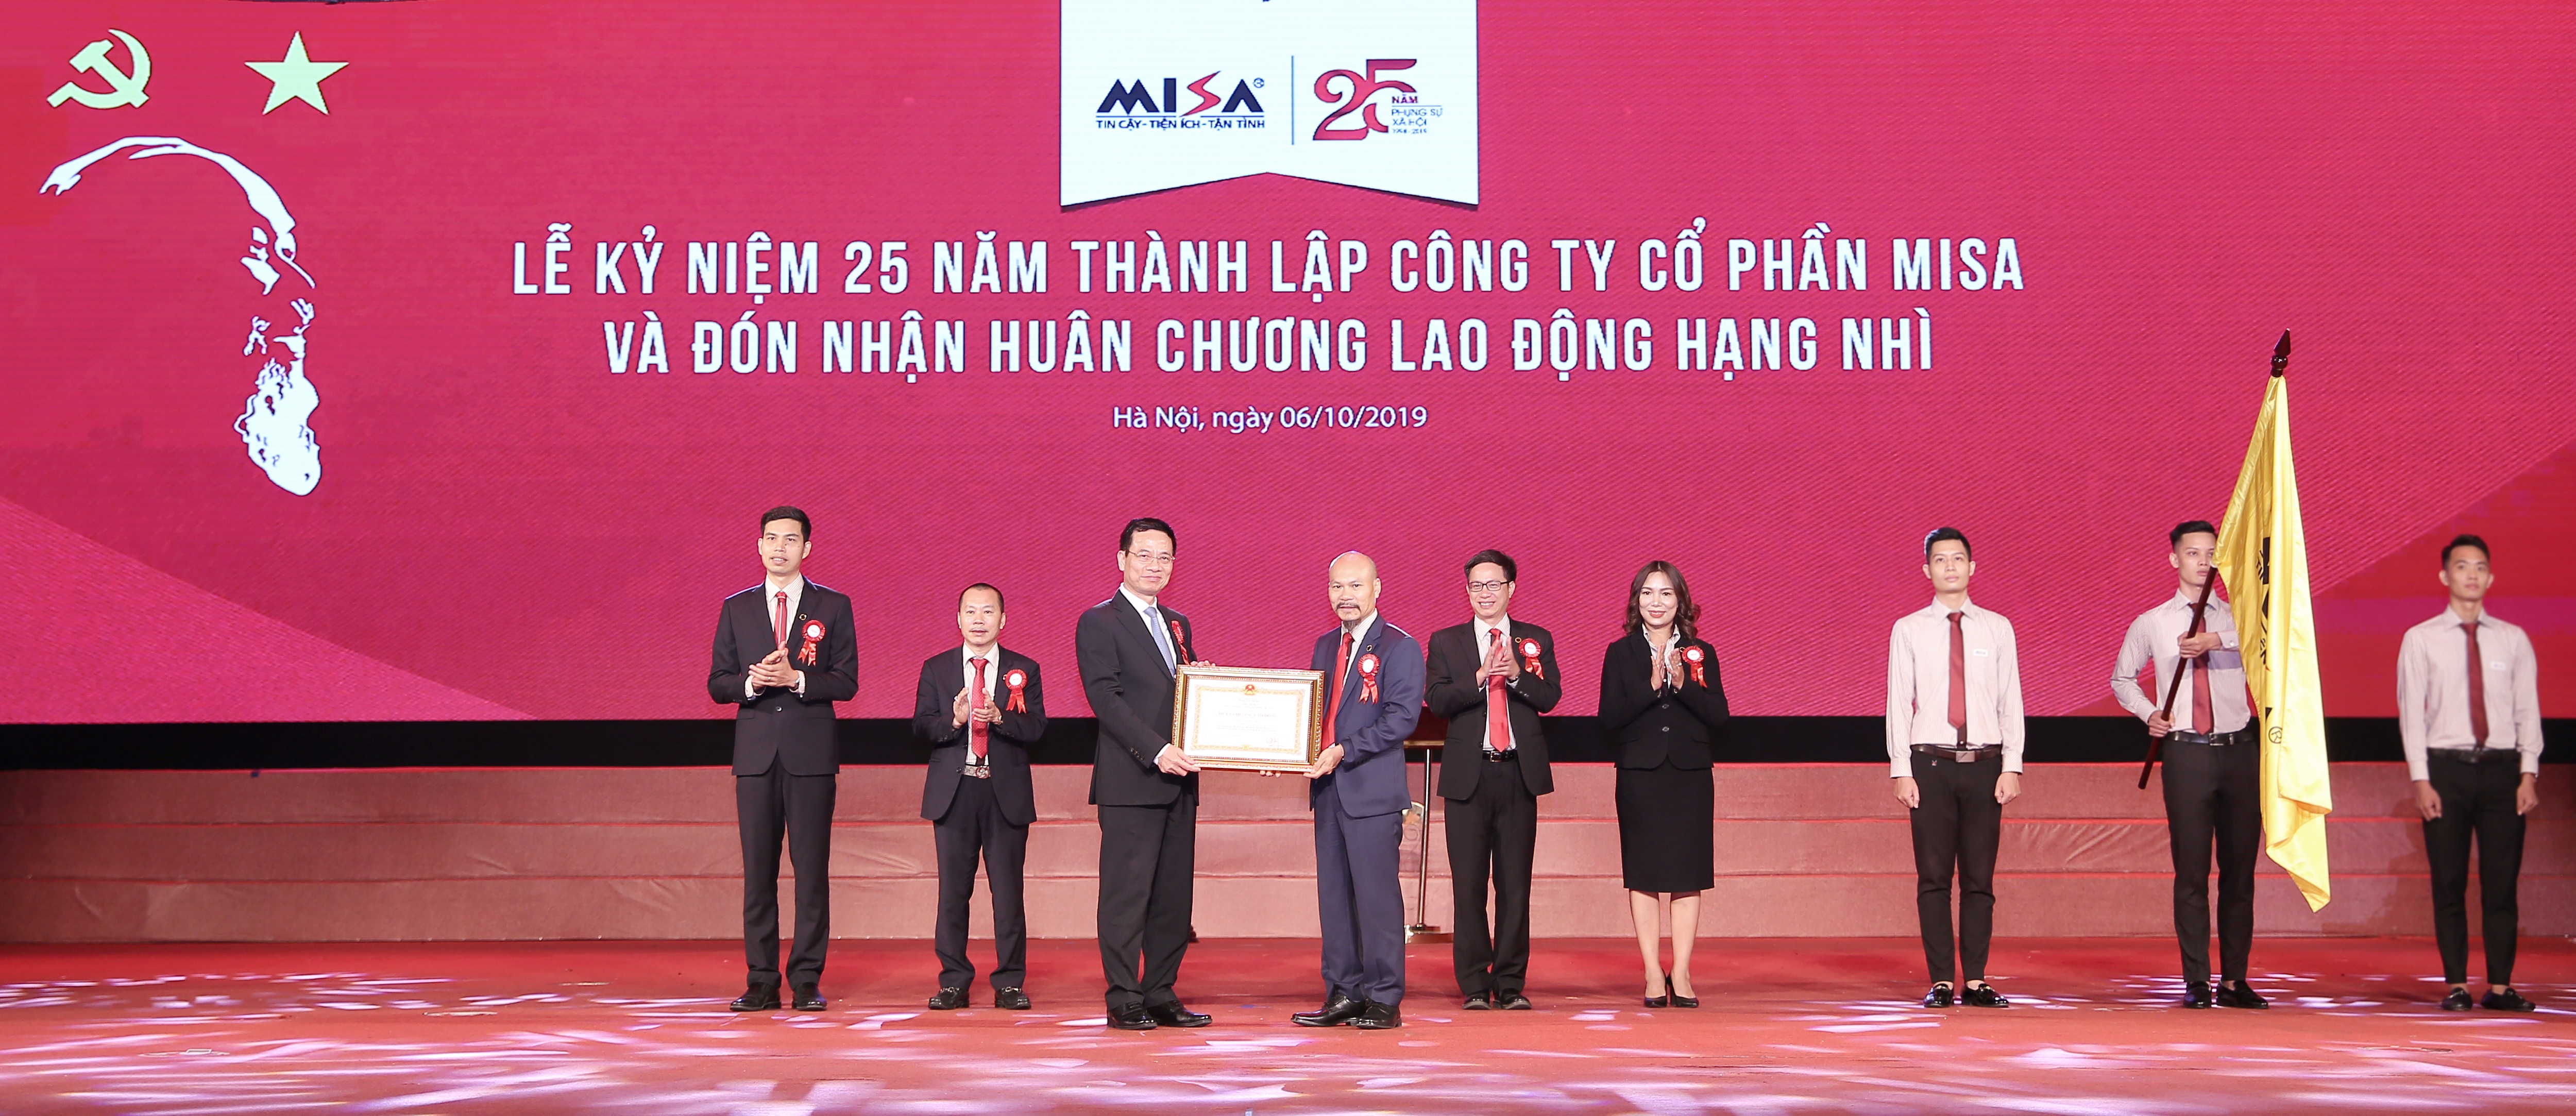 MISA nhận Huân chương Lao động hạng Nhì trong lễ kỷ niệm 25 năm thành lập